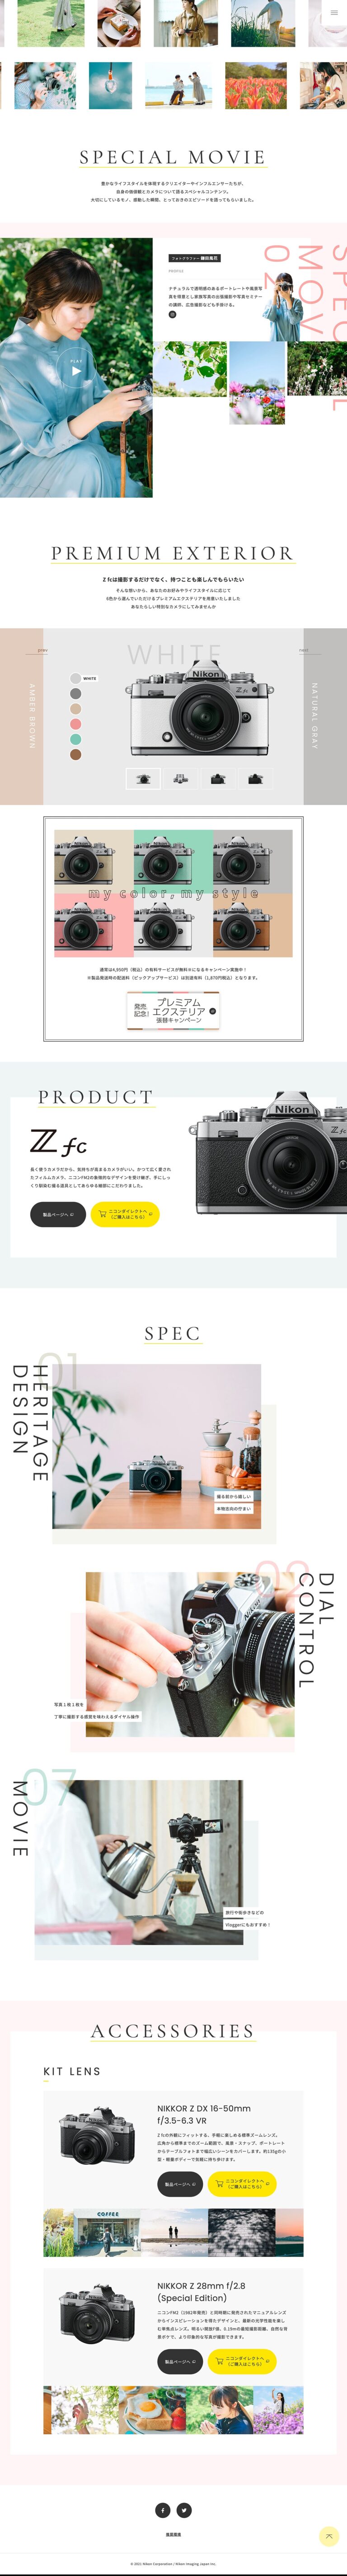 Z fcスペシャルコンテンツ | ニコンイメージングジャパン